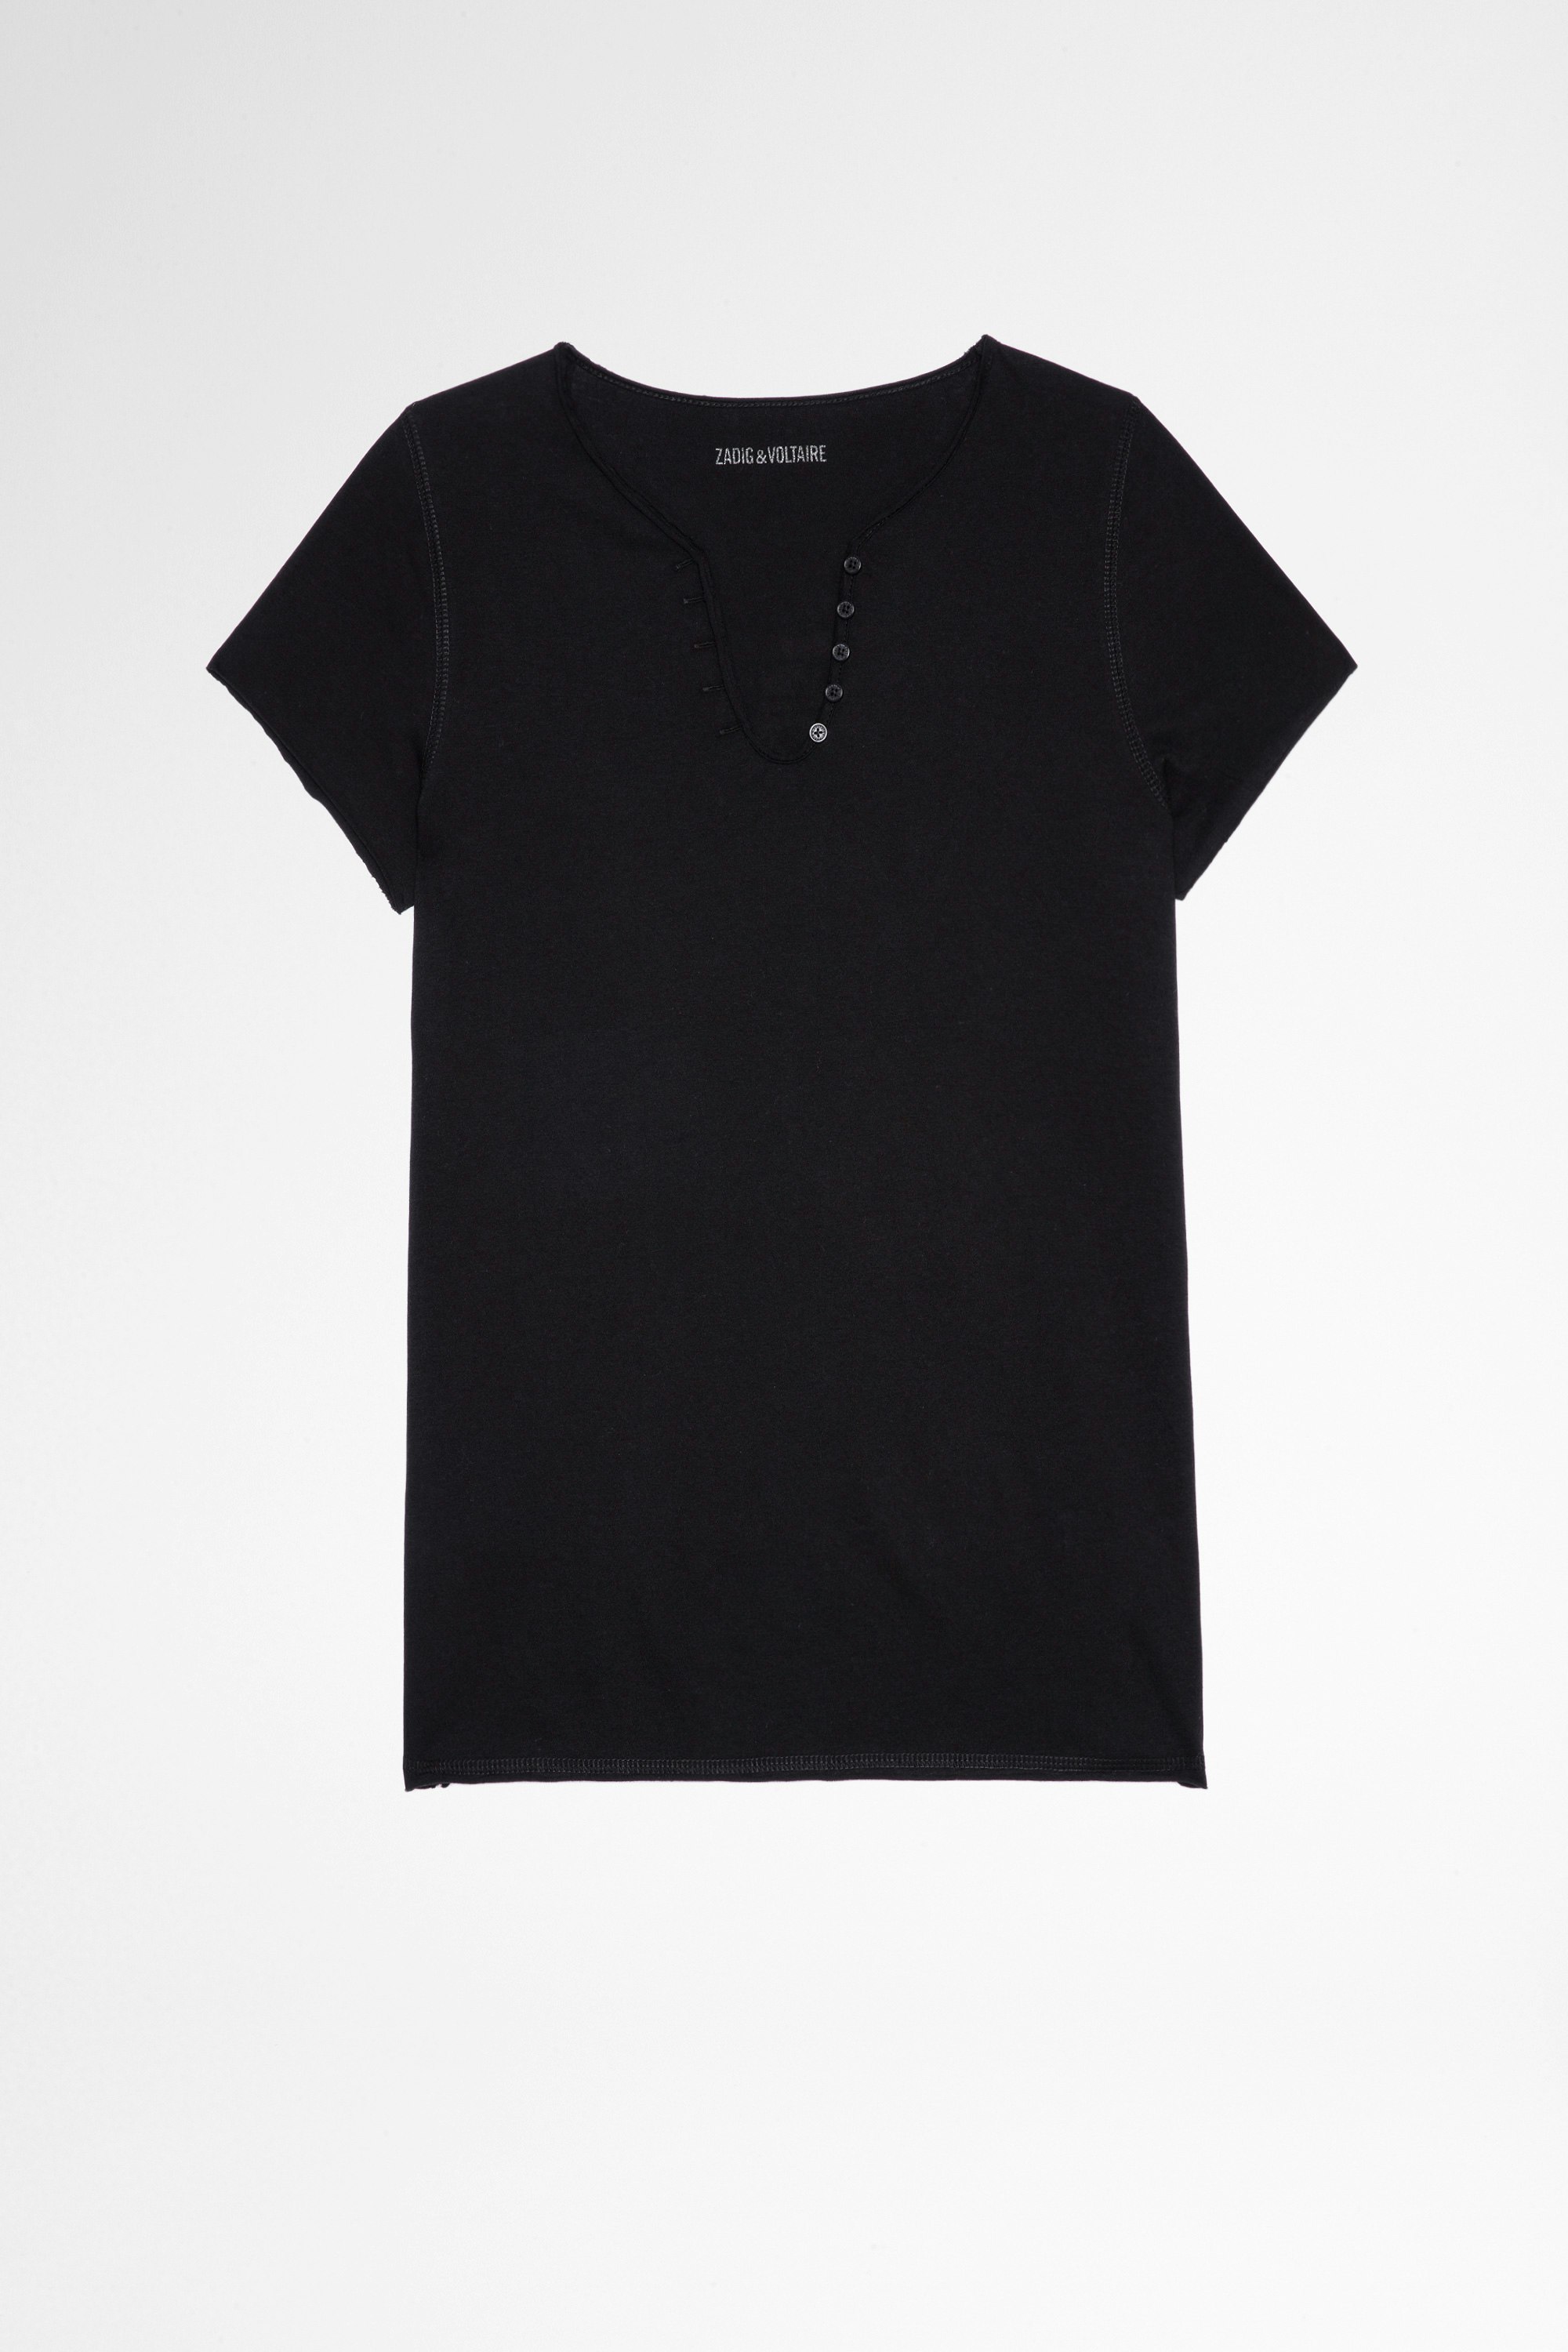 T-shirt tunisien ZV New Blason T-shirt aus schwarzer Baumwolle mit Henley-Ausschnitt und ZV-Applikation am Rücken für Damen